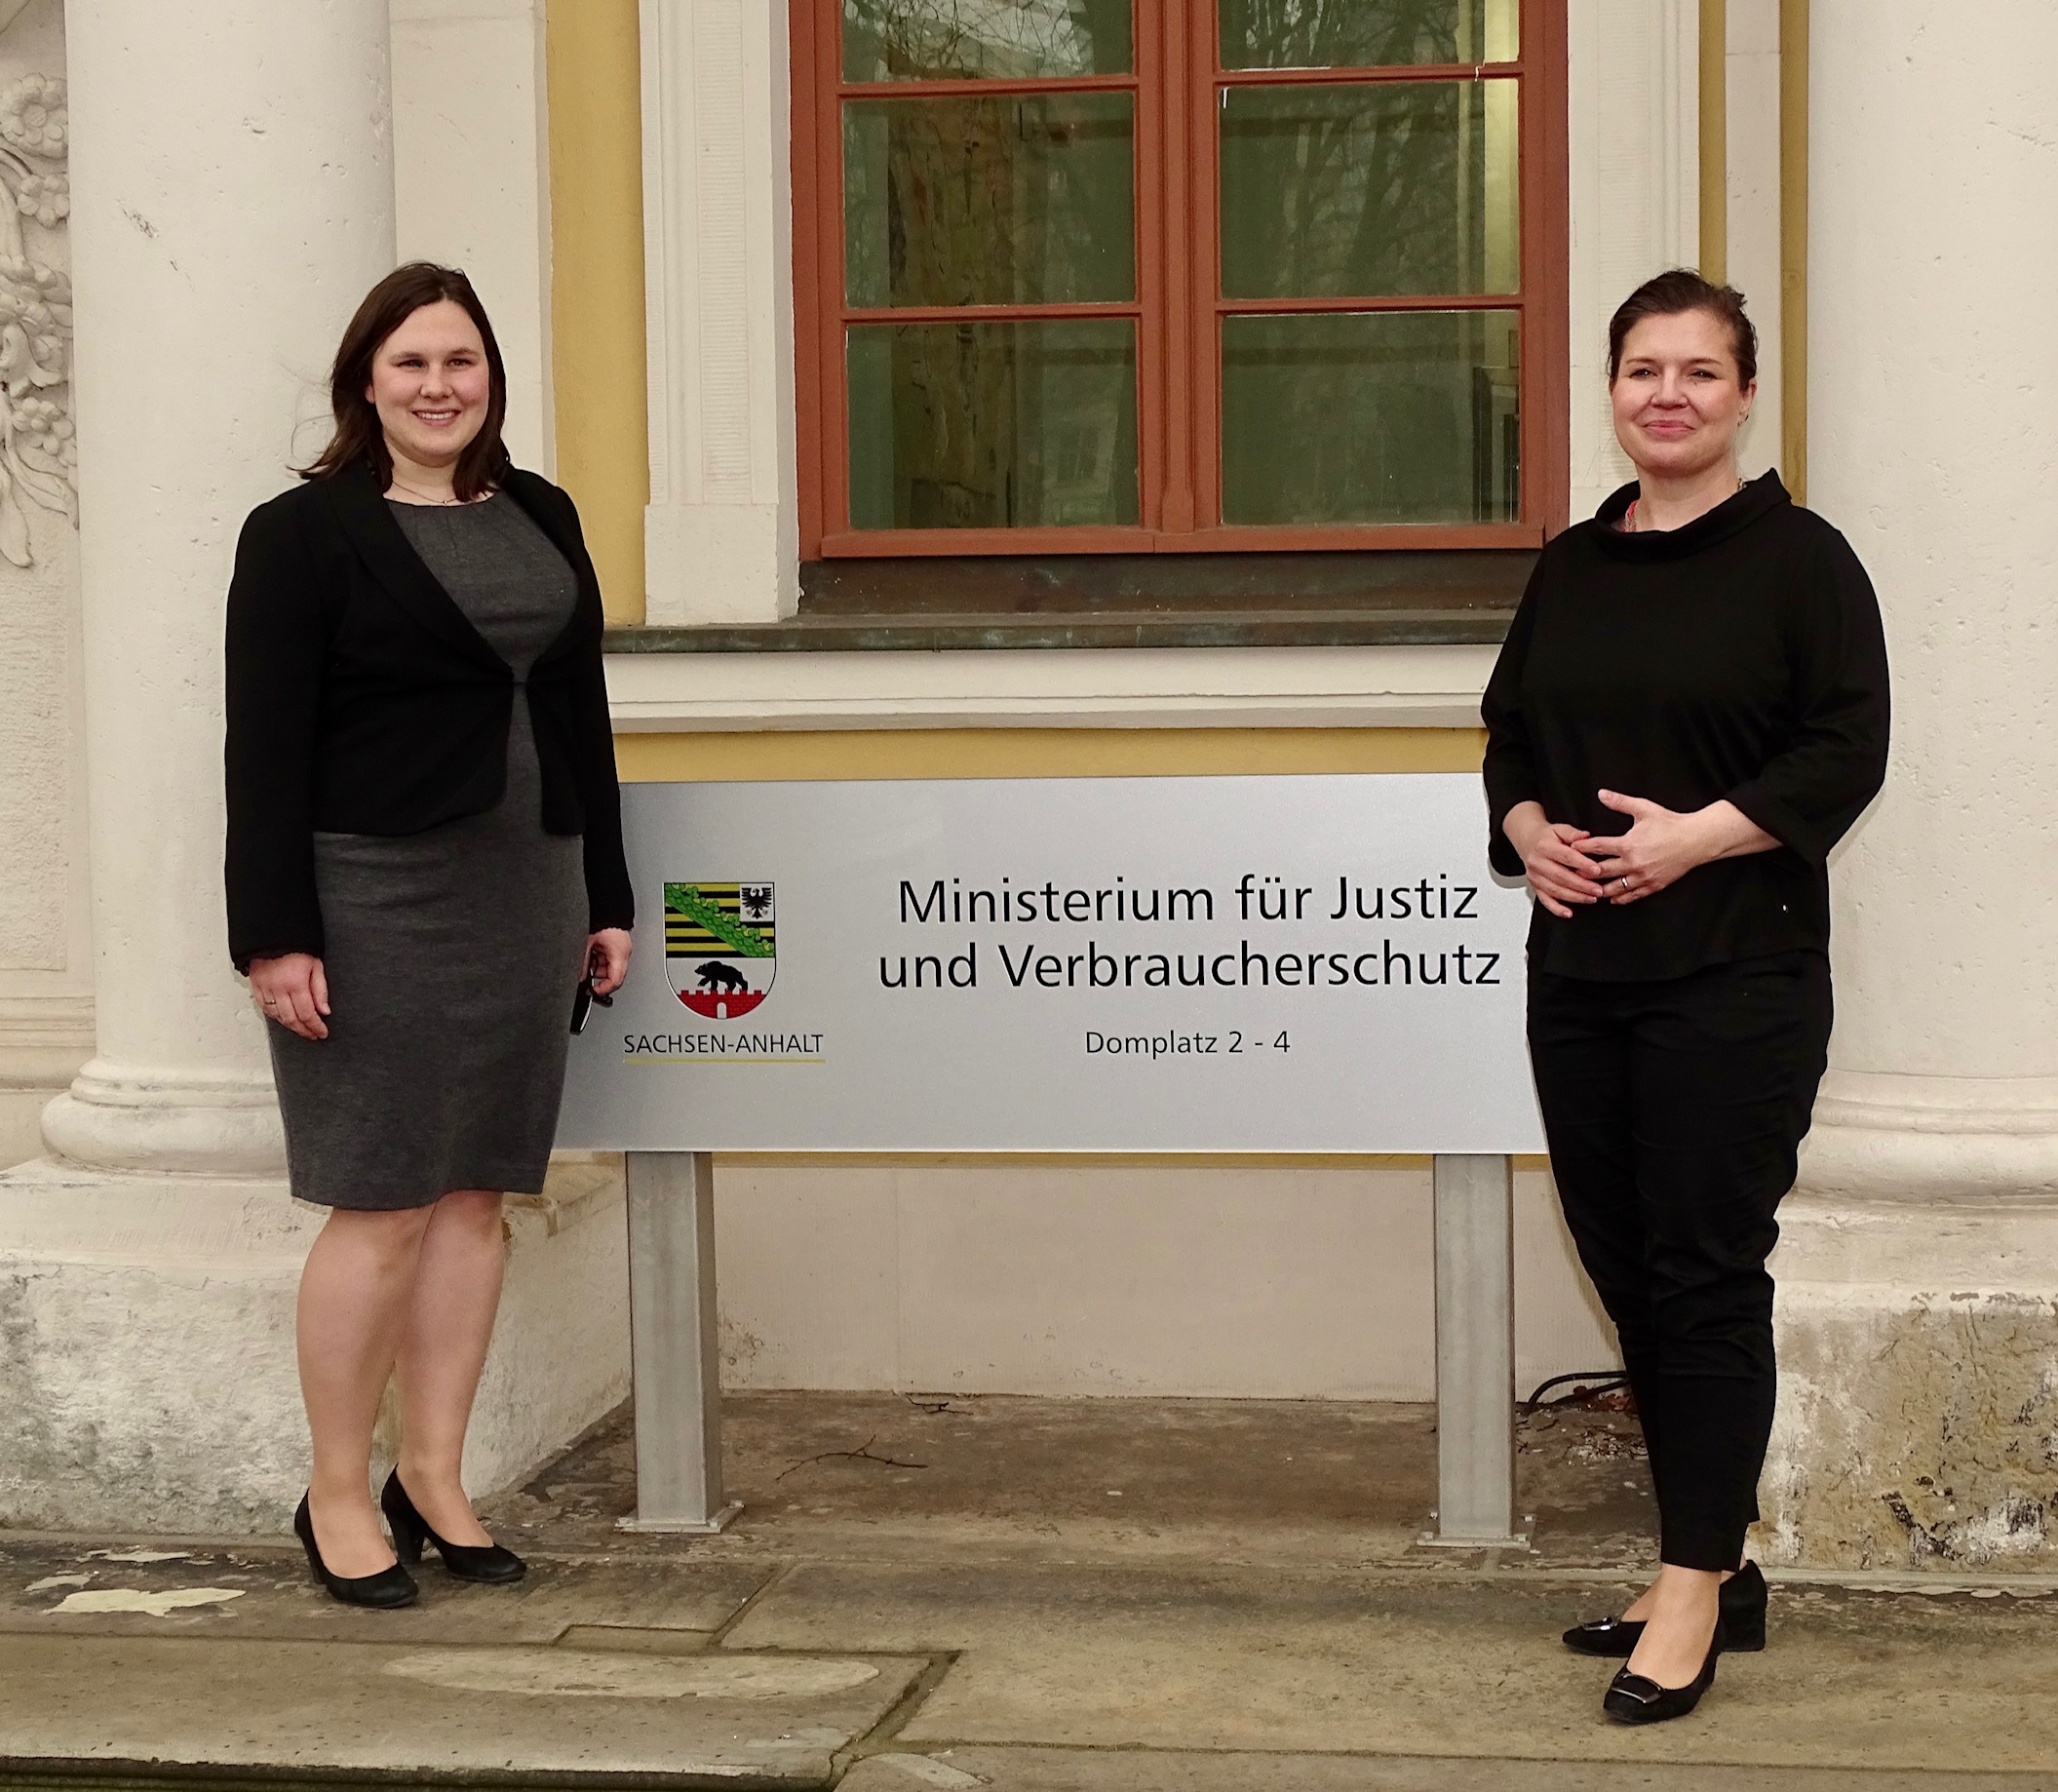 Sachsen-Anhalts Justizministerin Franziska Weidinger (re.) gratuliert der Absolventin Johanna Decher zum erfolgreichen Abschluss und zur Spitzennote